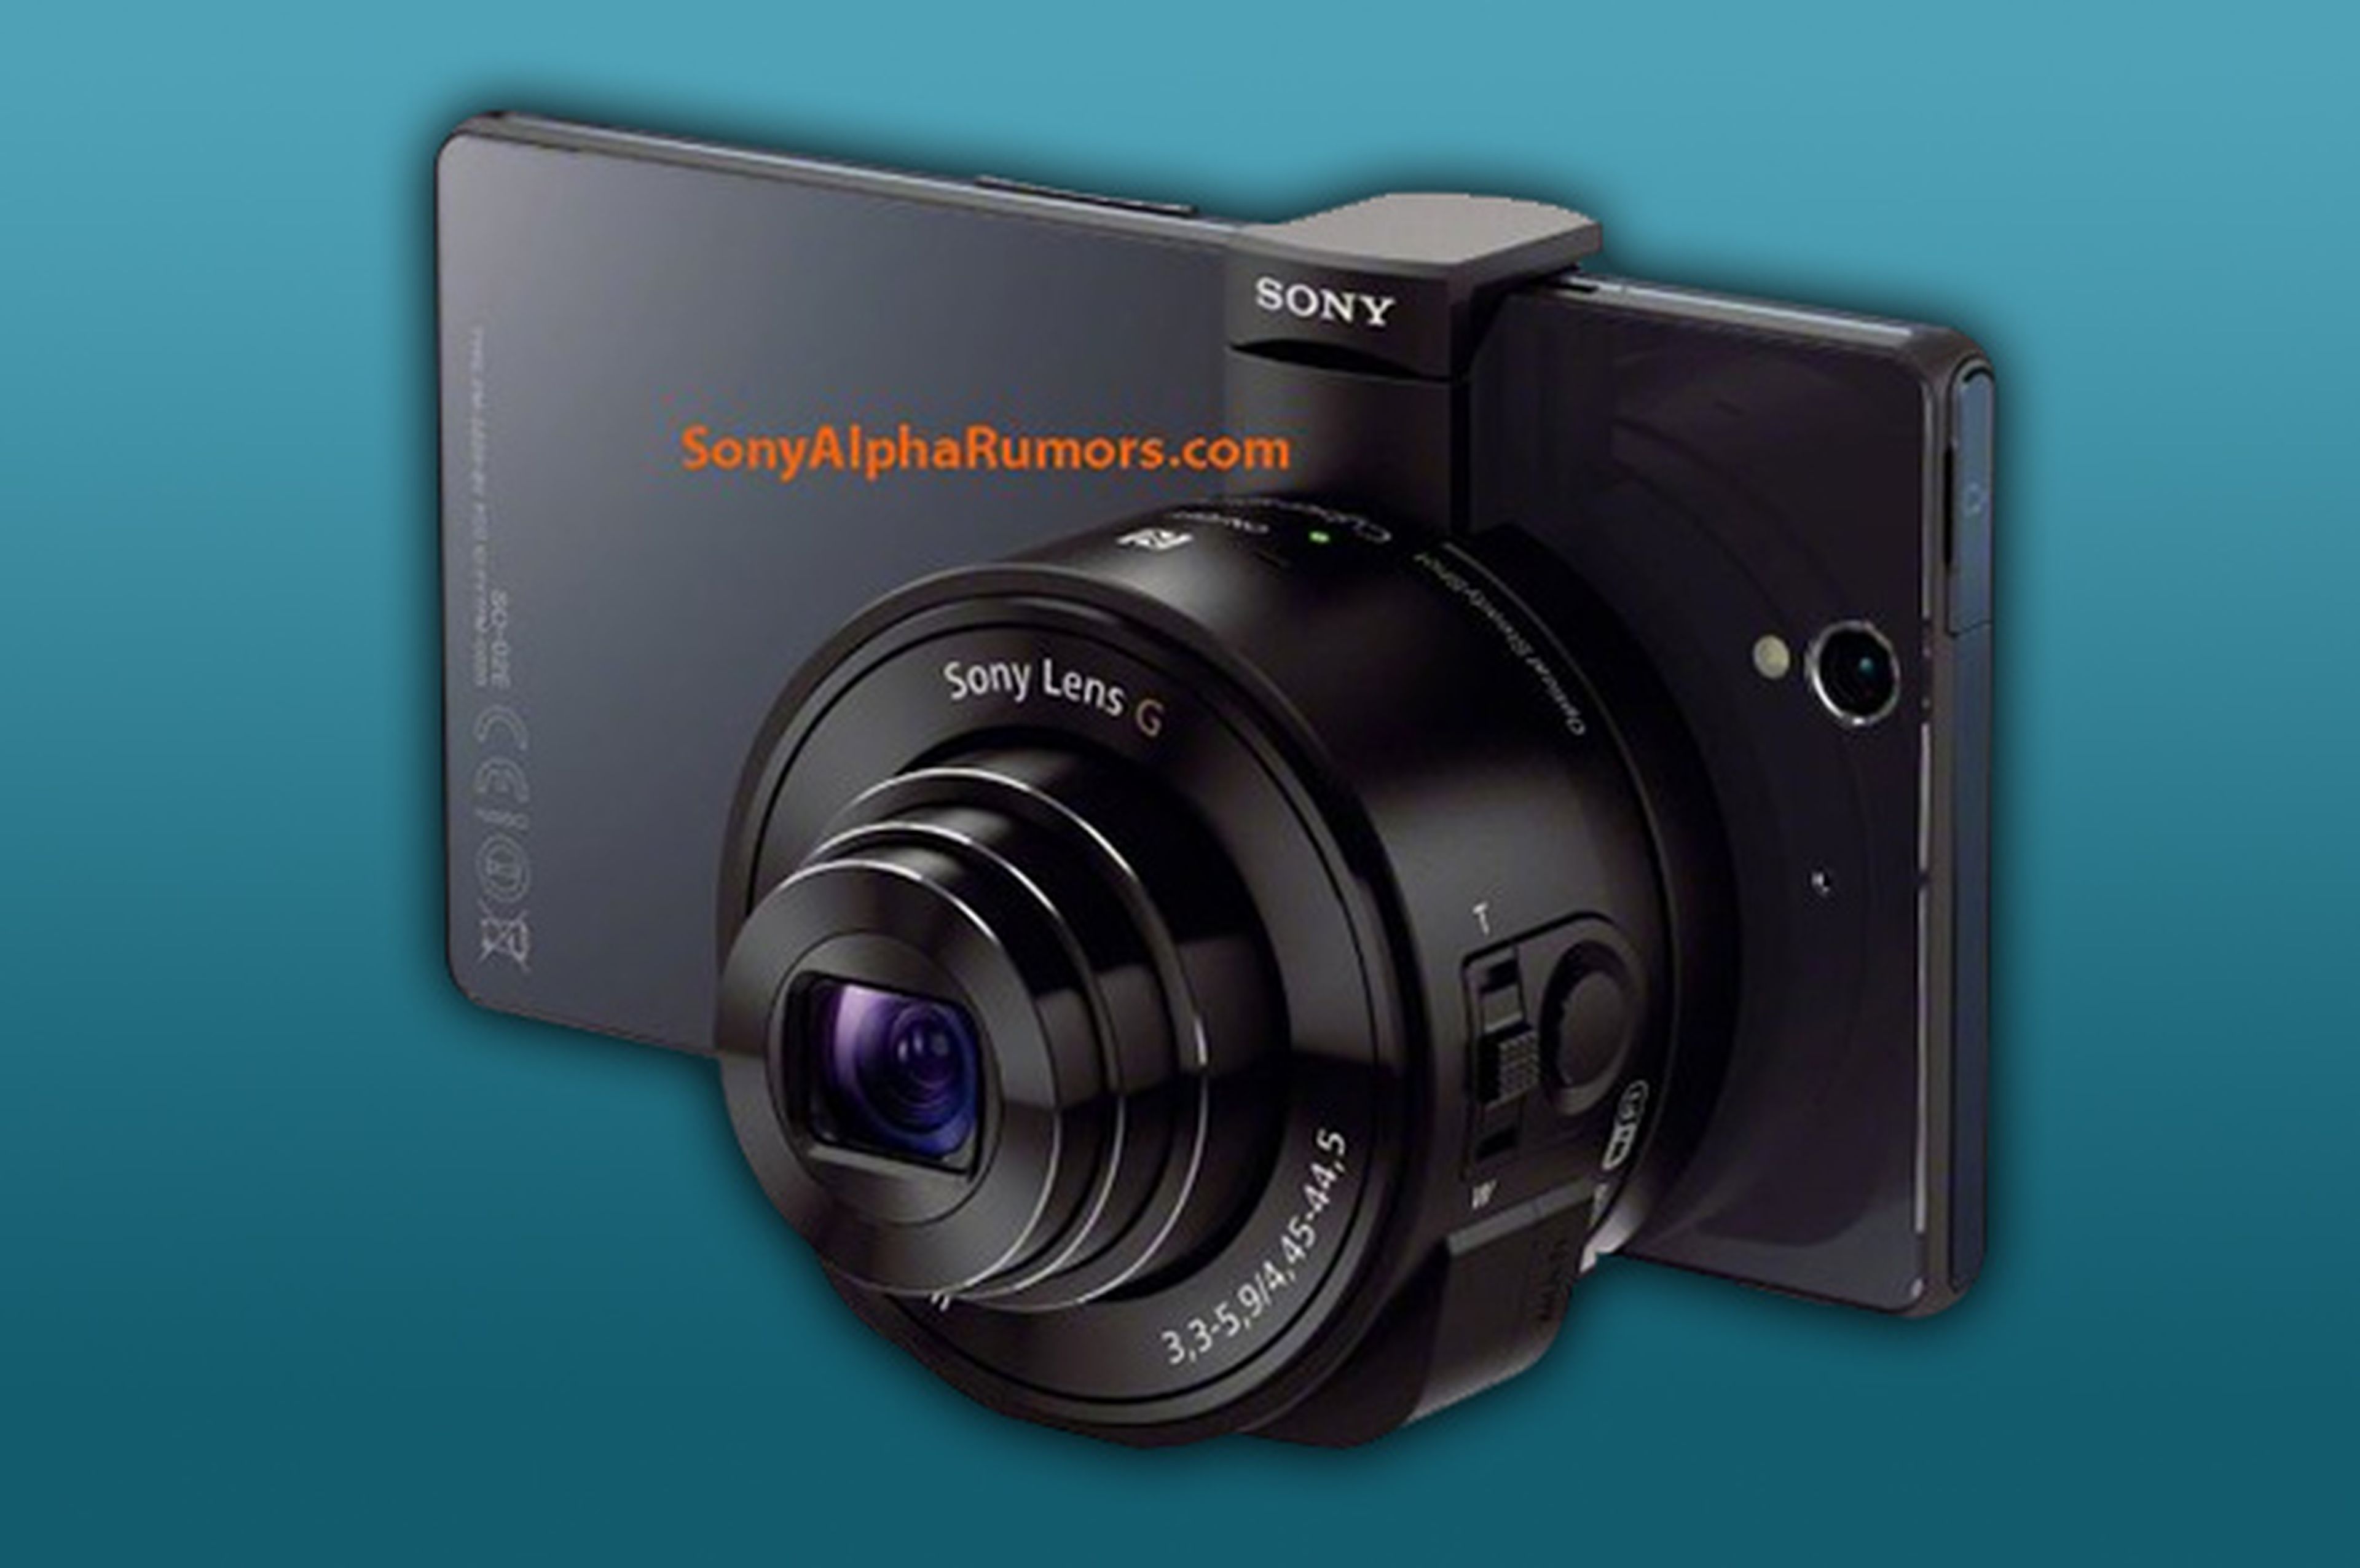 Sony tiene un lente/cÃ¡mara para usar con tu smartphone